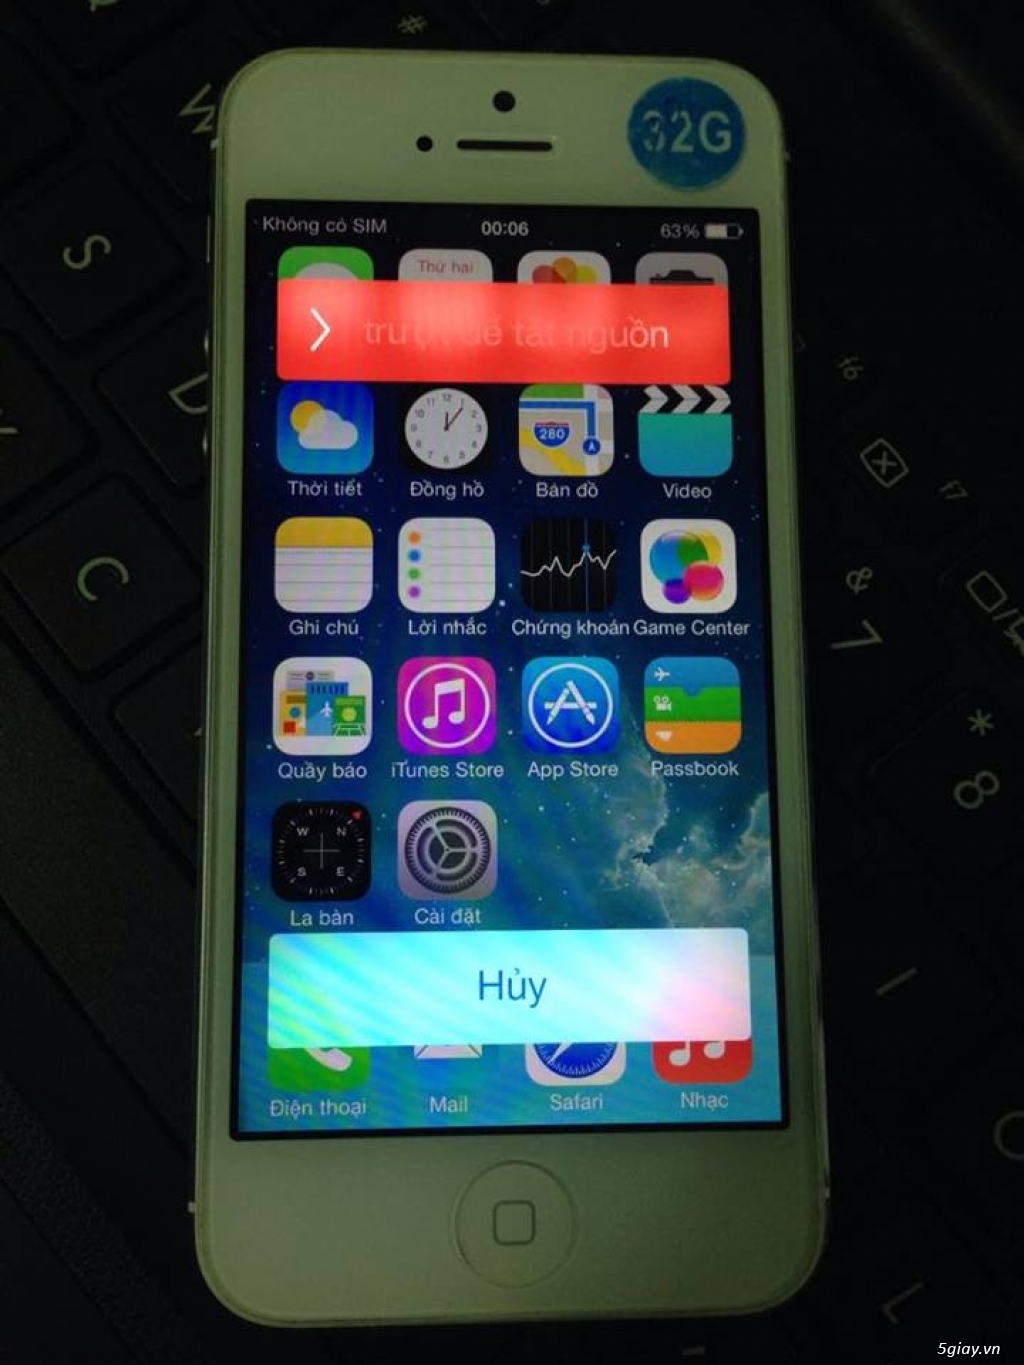 iPhone 5 iOS 7.0.6 32Gb Trắng Máy Quốc Tế Zin Keng 99,9% Gía Chỉ 3Tr300K Bảo Hành 03 Tháng